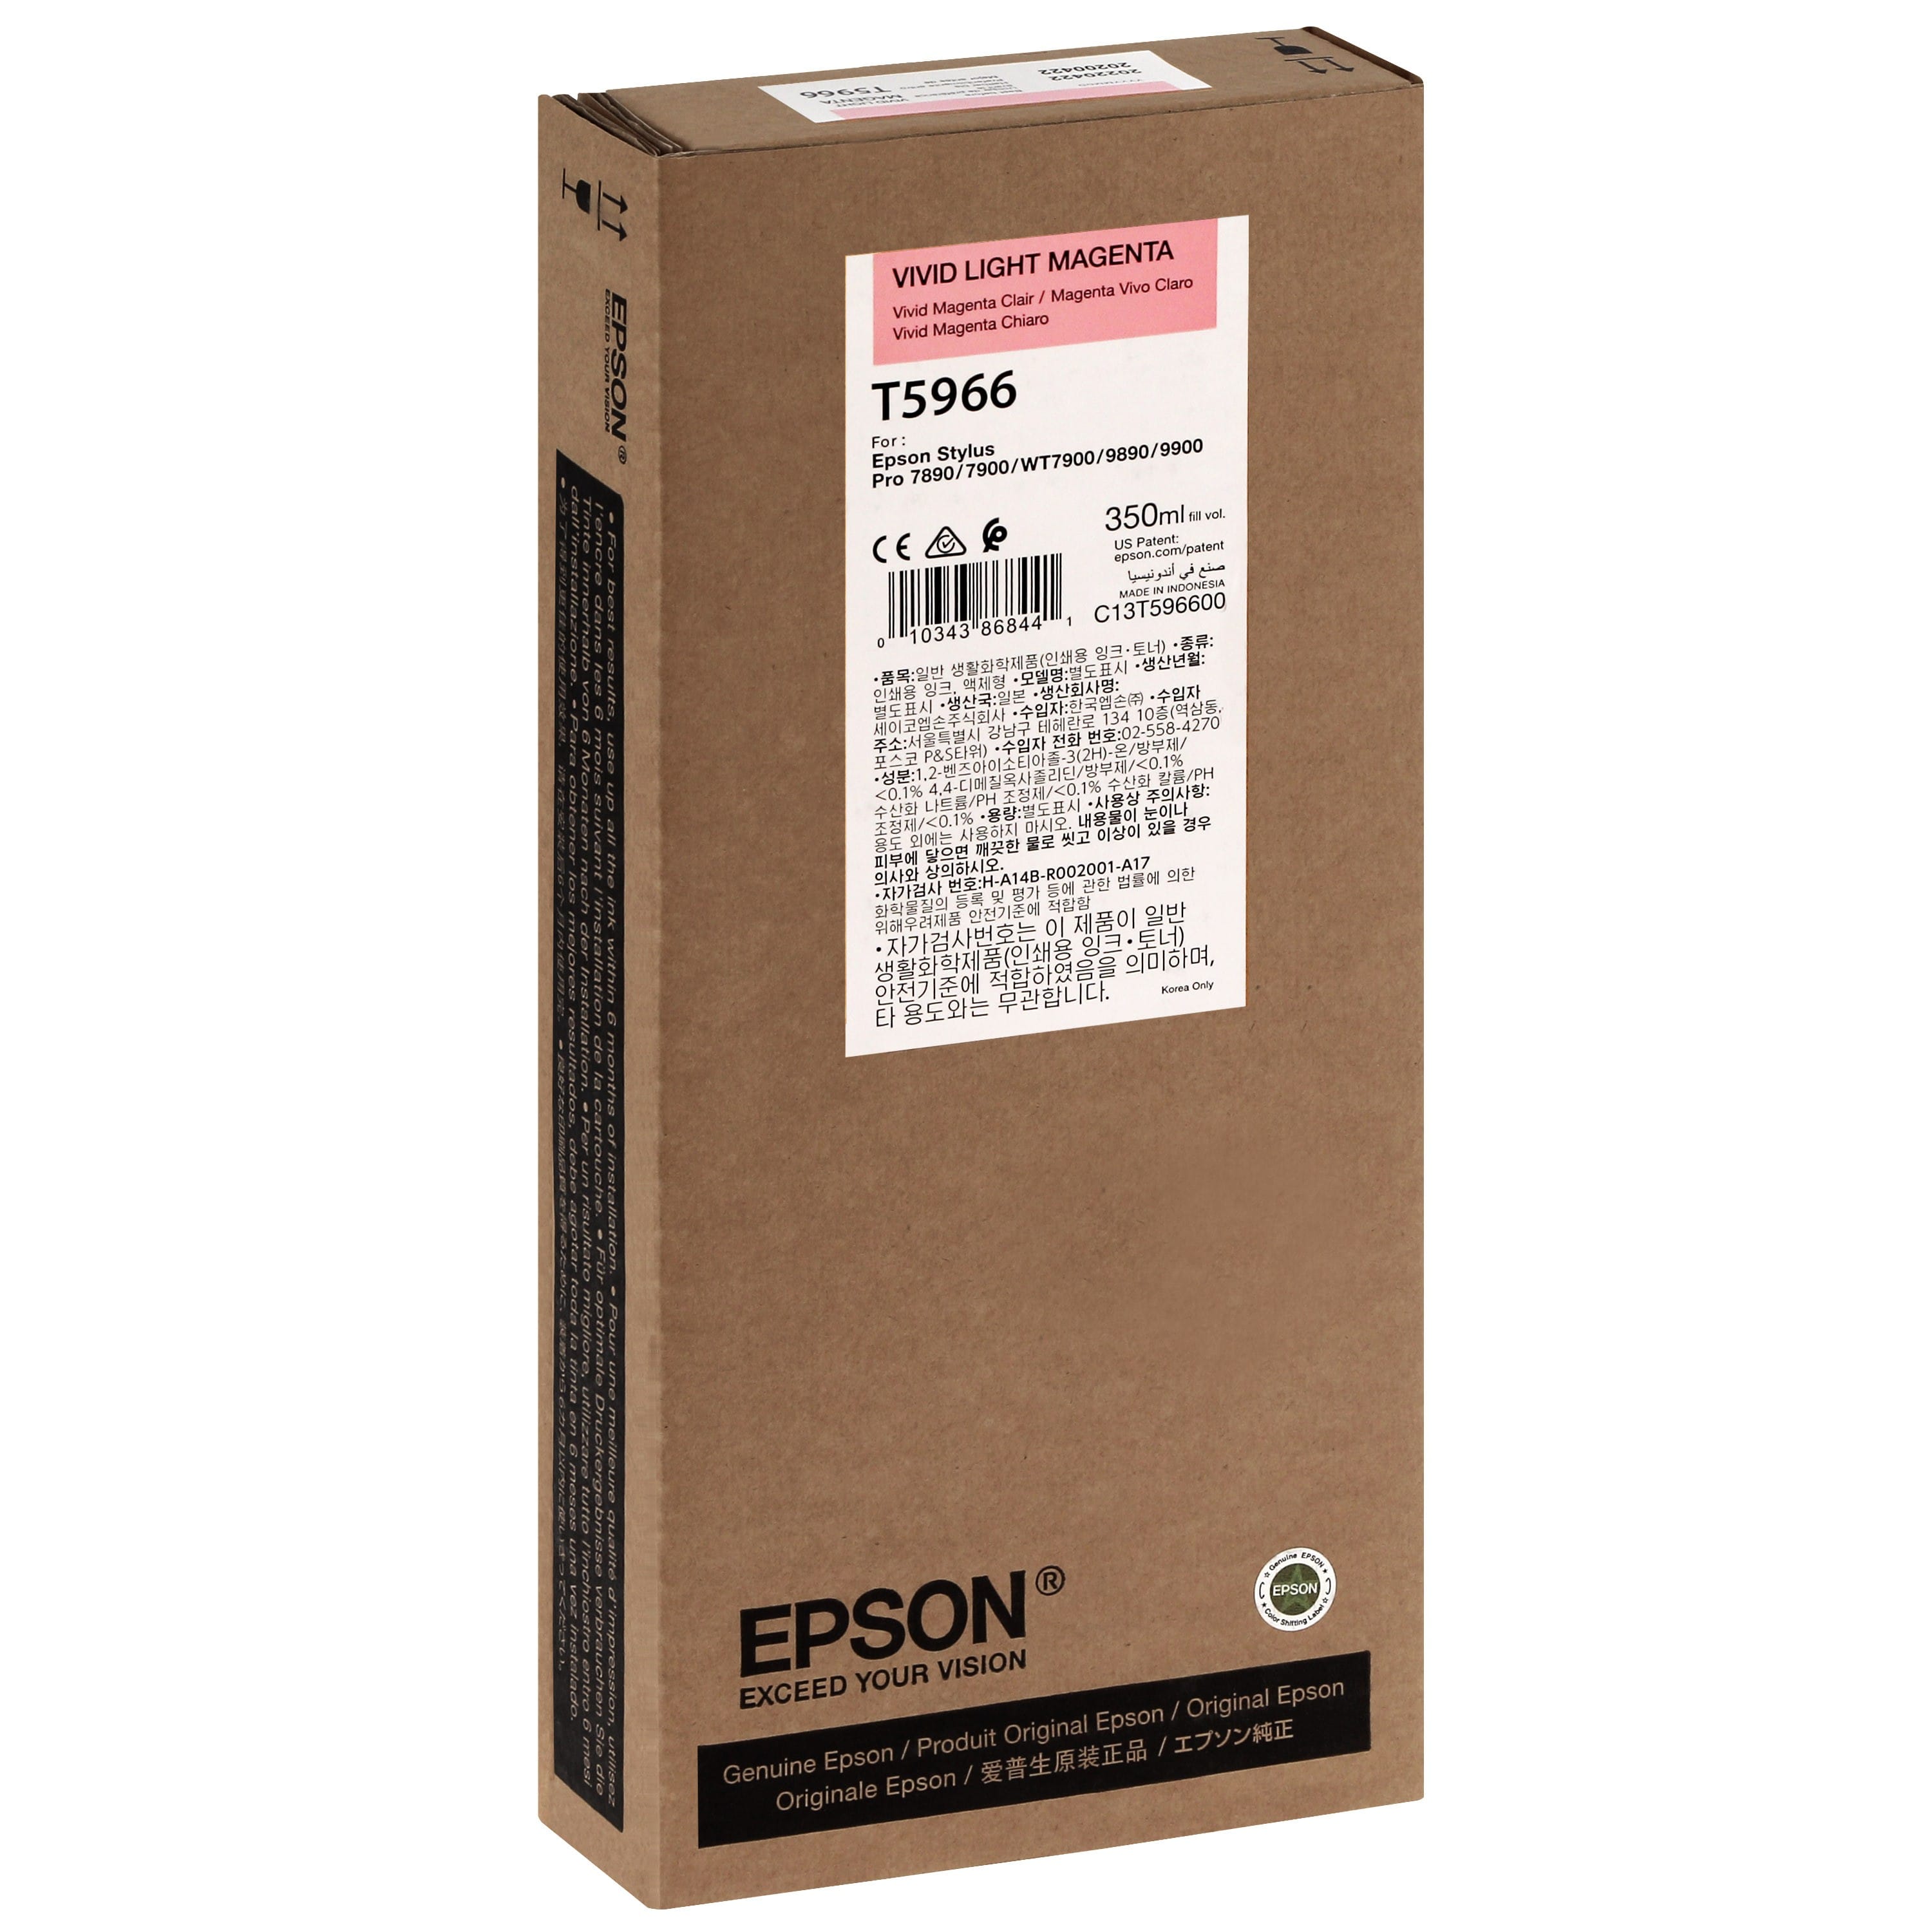 EPSON - Cartouche d'encre traceur T5966 Pour imprimante 7890/9890/7900/9900 Vivid Magenta clair - 350ml